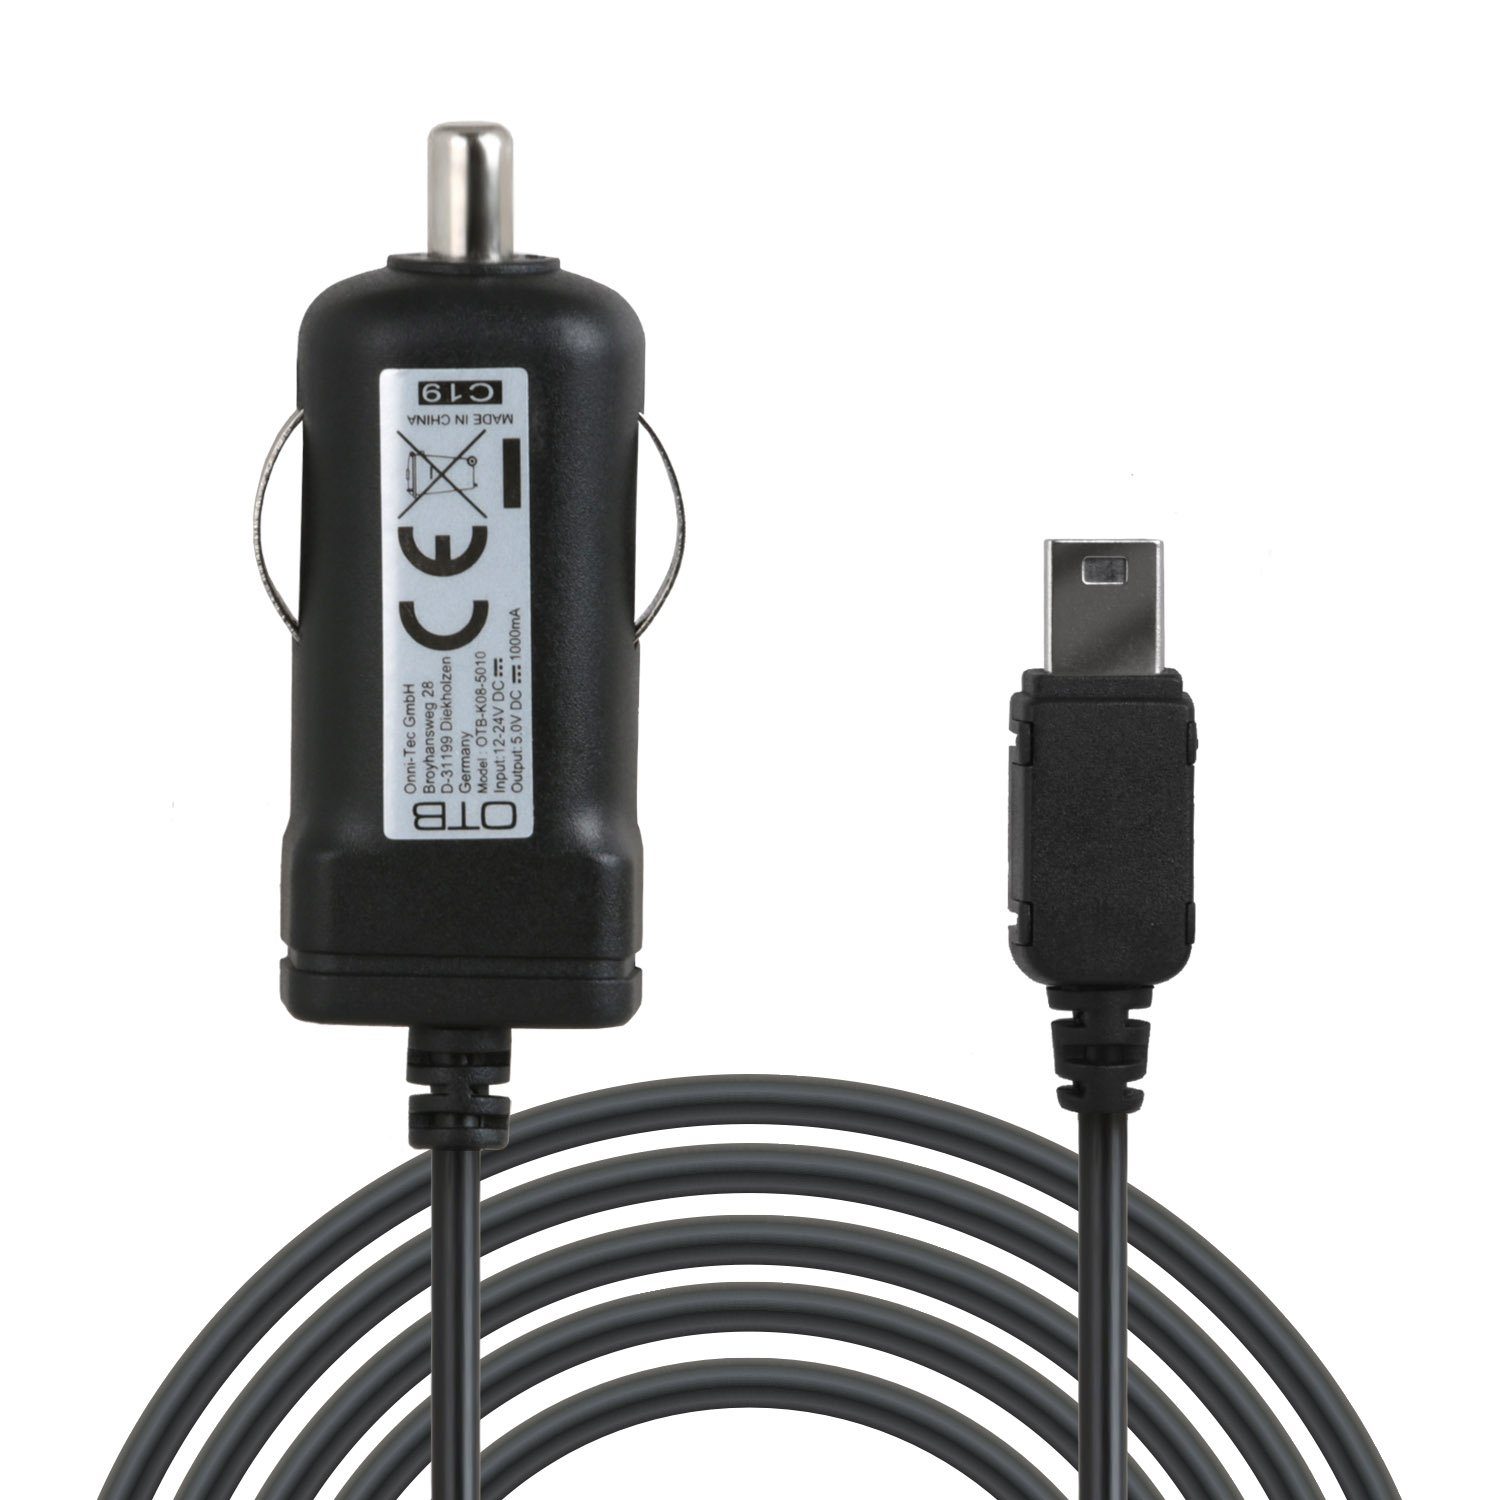 Wicked Chili 1m KFZ Ladekabel mit TMC Antenne für NAVIGON Navi Gerät Auto-Adapter Zigarettenanzünder-Stecker zu Mini USB, 100 cm, mit integrierter TMC Antenne und LED-Funktionsanzeige